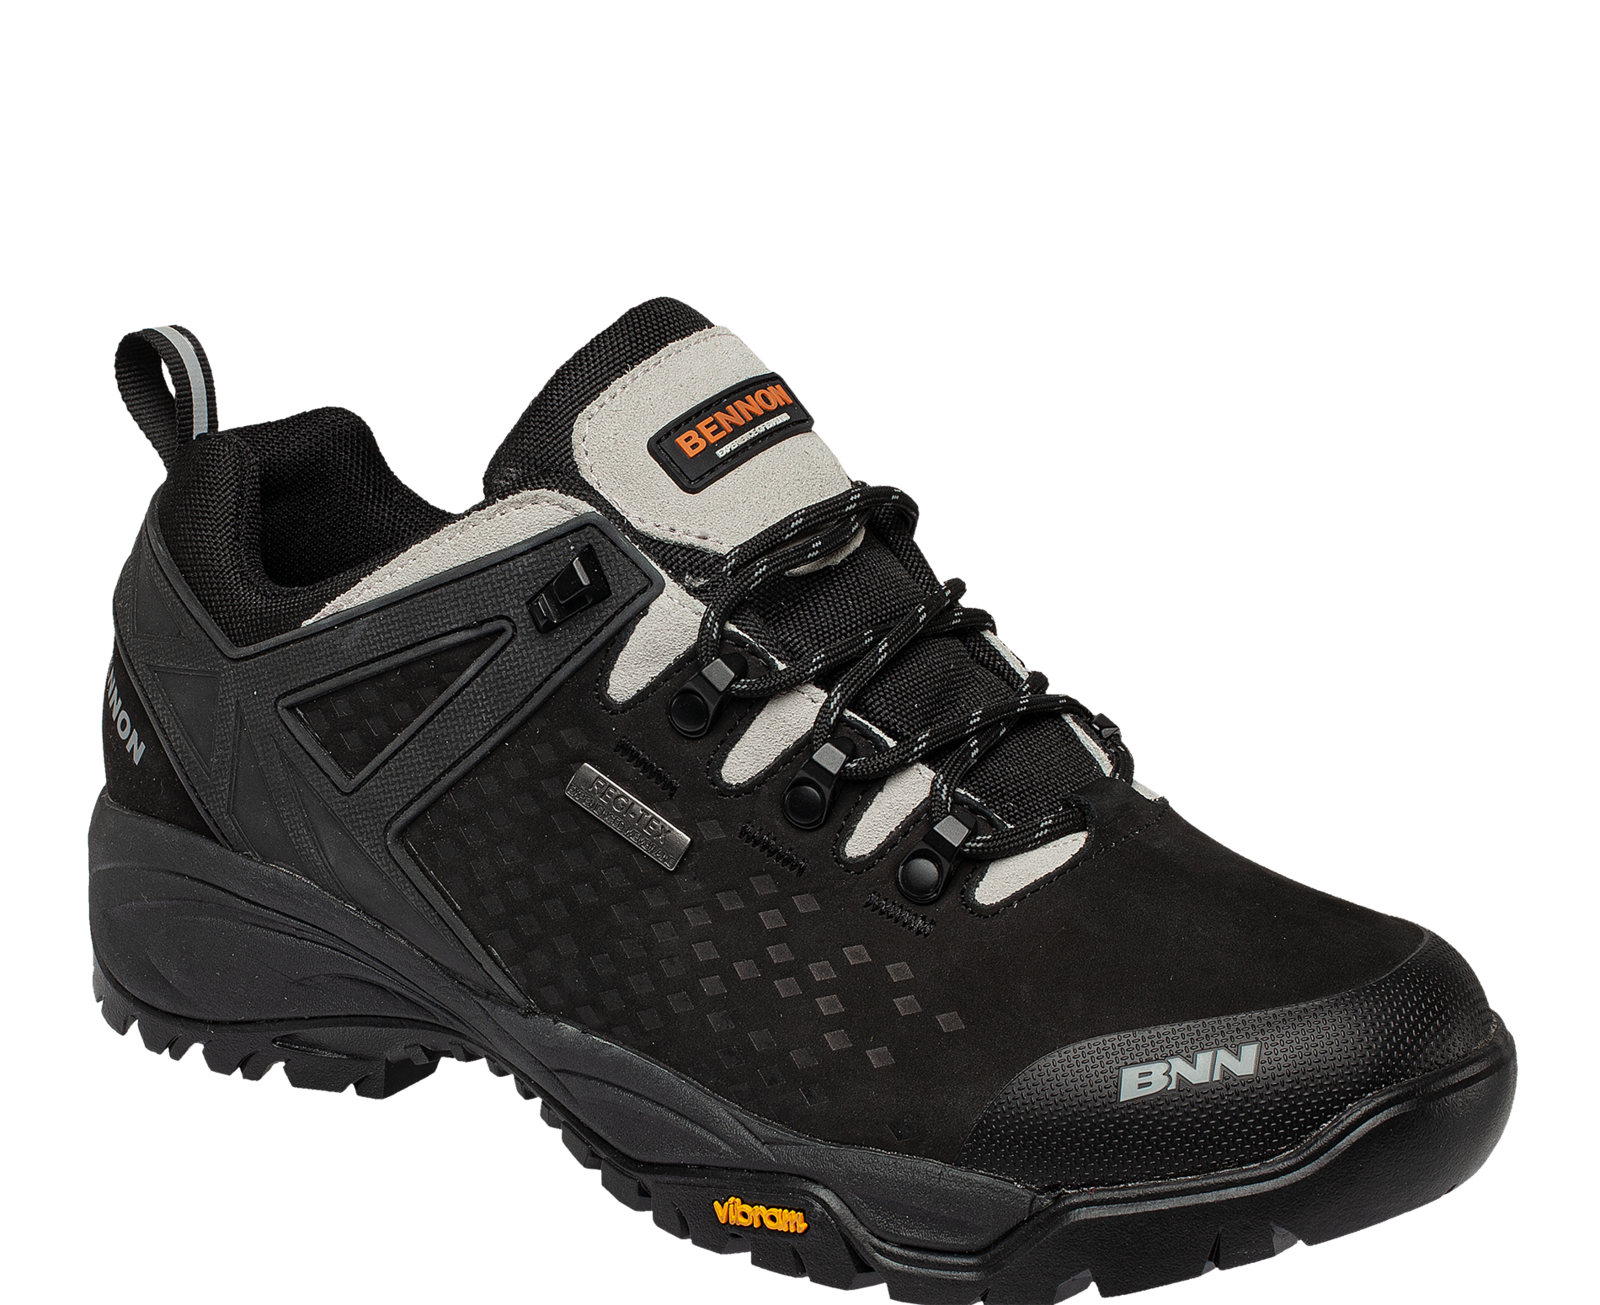 Outdoorová obuv Bennon Recado XTR O2 s membránou - veľkosť: 46, farba: čierna